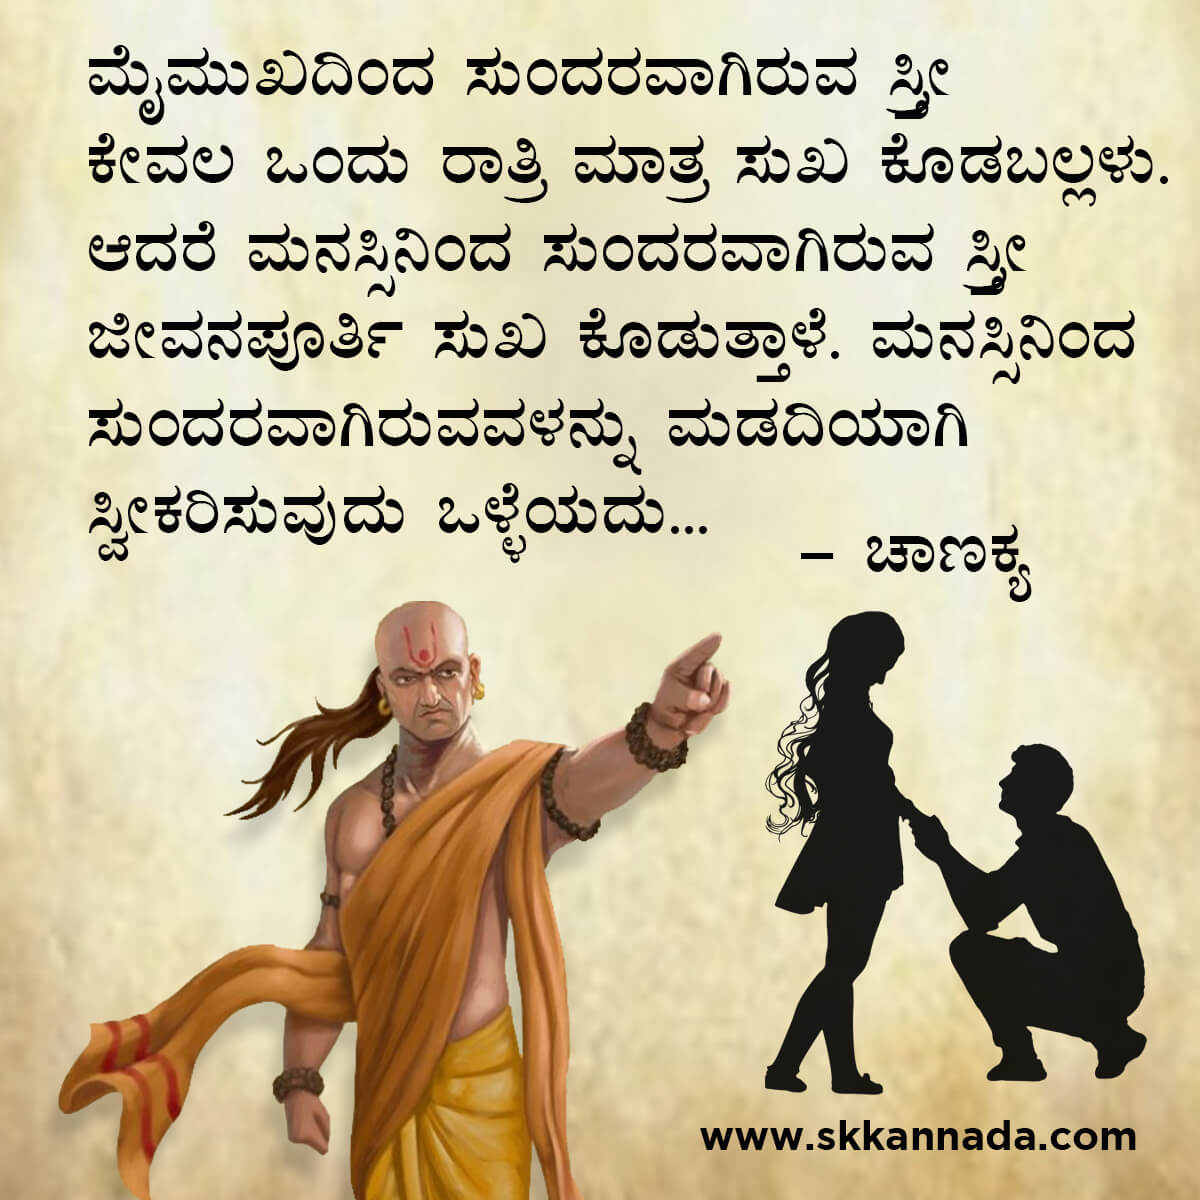 ಚಾಣಕ್ಯ ನೀತಿಗಳು : Chanakya Niti in Kannada - ಚಾಣಕ್ಯ ತಂತ್ರಗಳು - ಚಾಣಕ್ಯ ಸೂತ್ರಗಳು - chanakya quotes in kannada